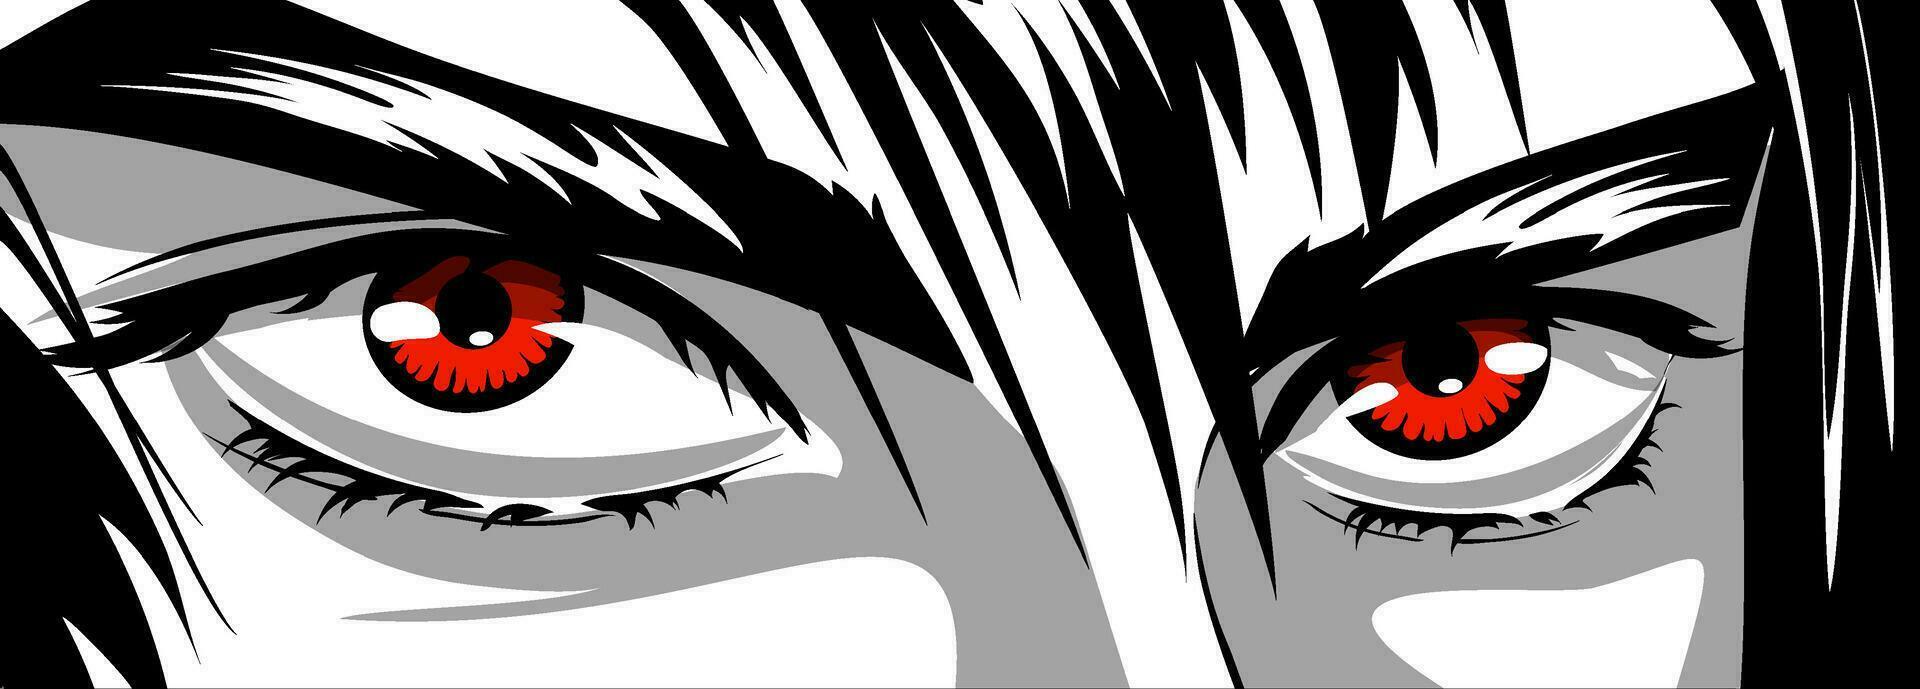 rot Augen, wütend aussehen von ein Mann im Manga und Anime Stil. vektor